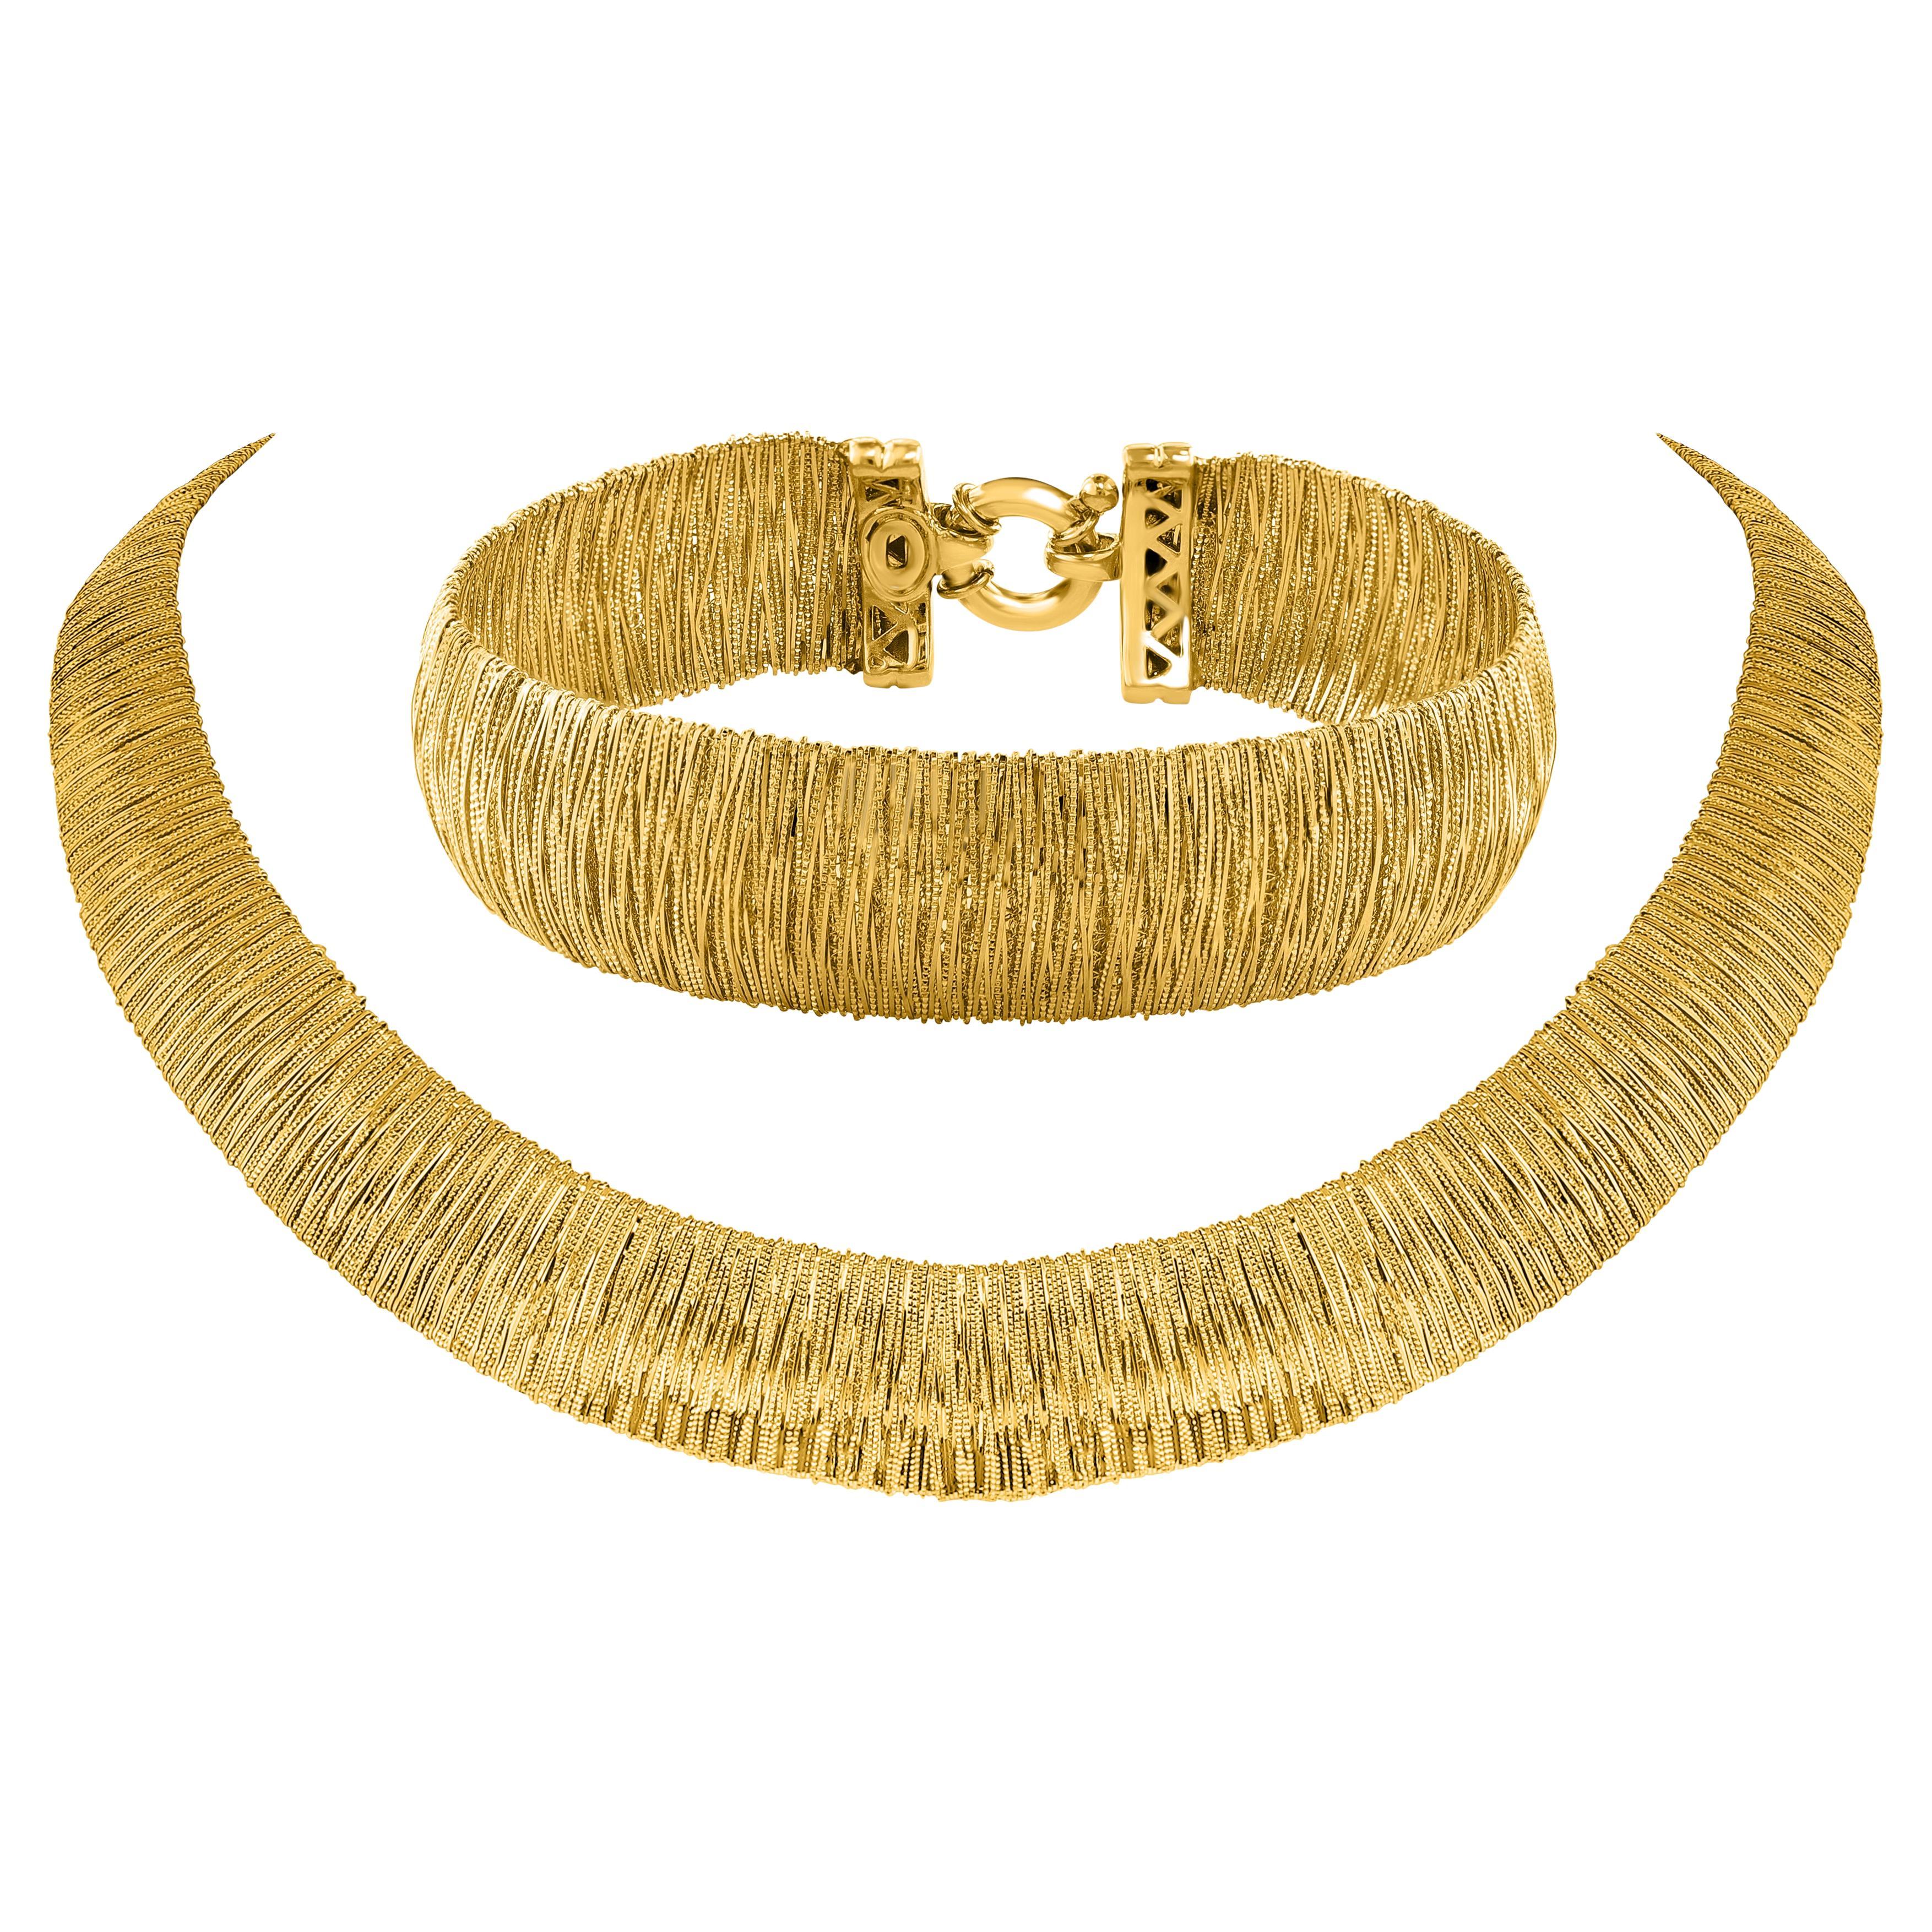 Solide massive 18Kt Gelbgold Kleopatra Kragen Bib Halskette Choker & Armband 68gm 